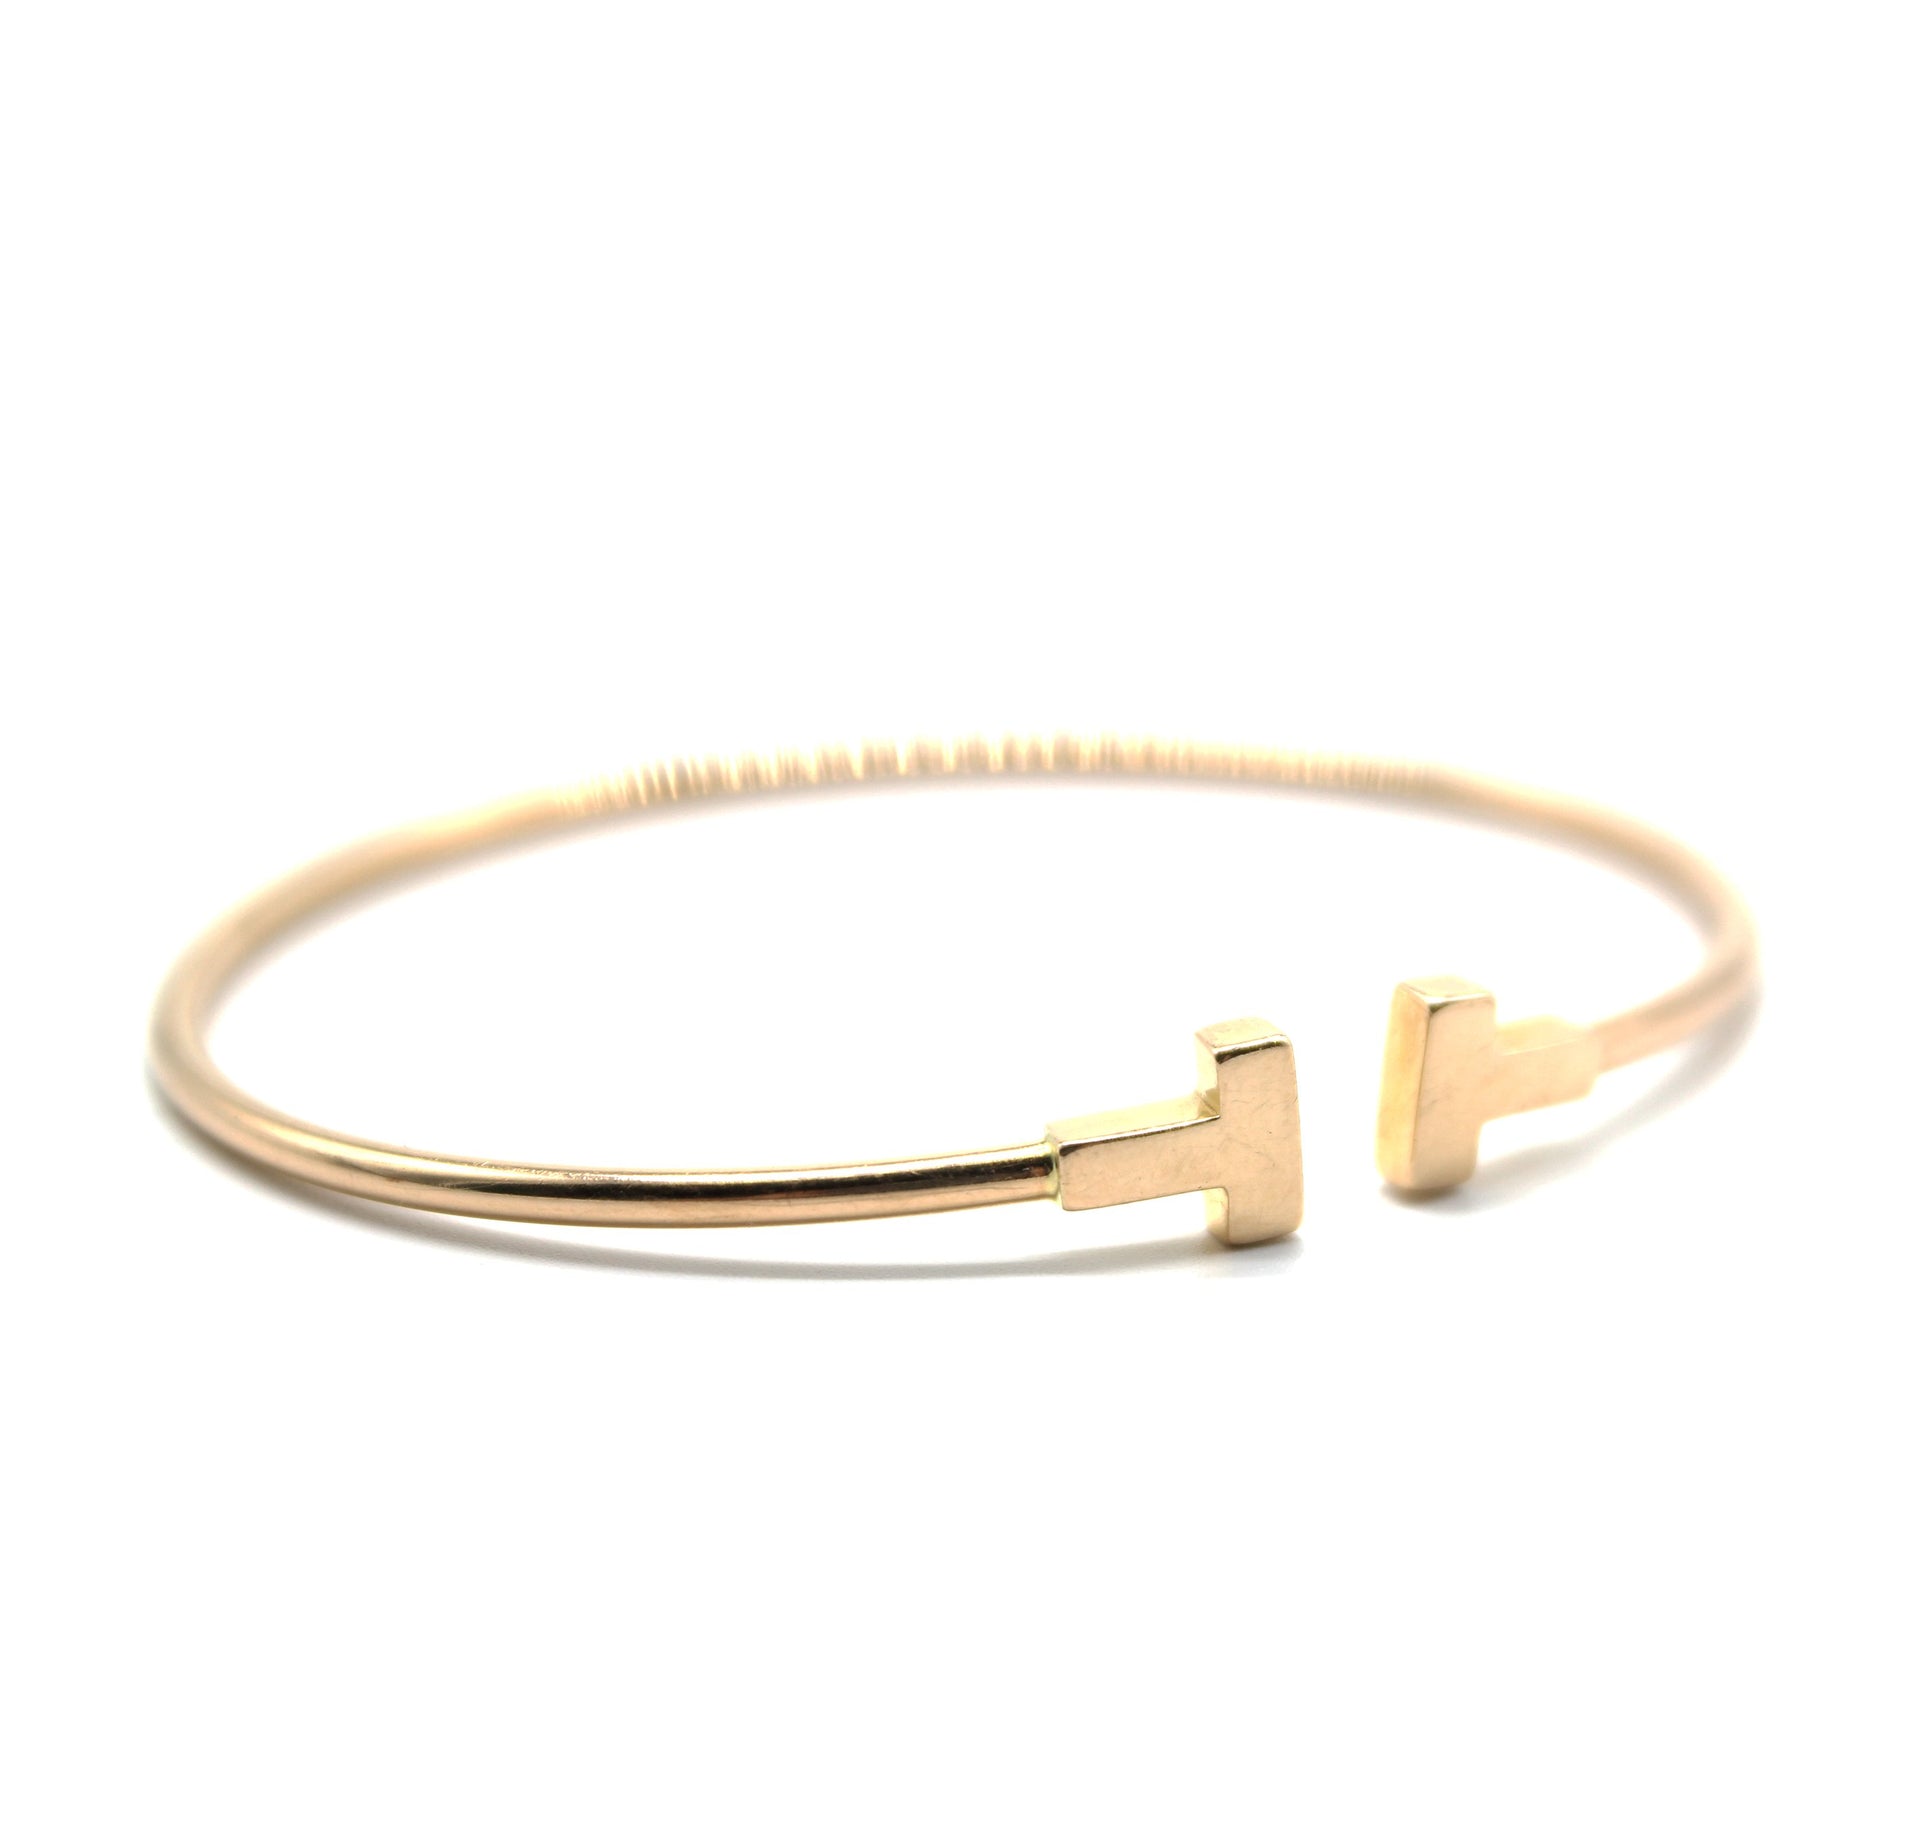 Tiffany Narrow Wire Bracelet